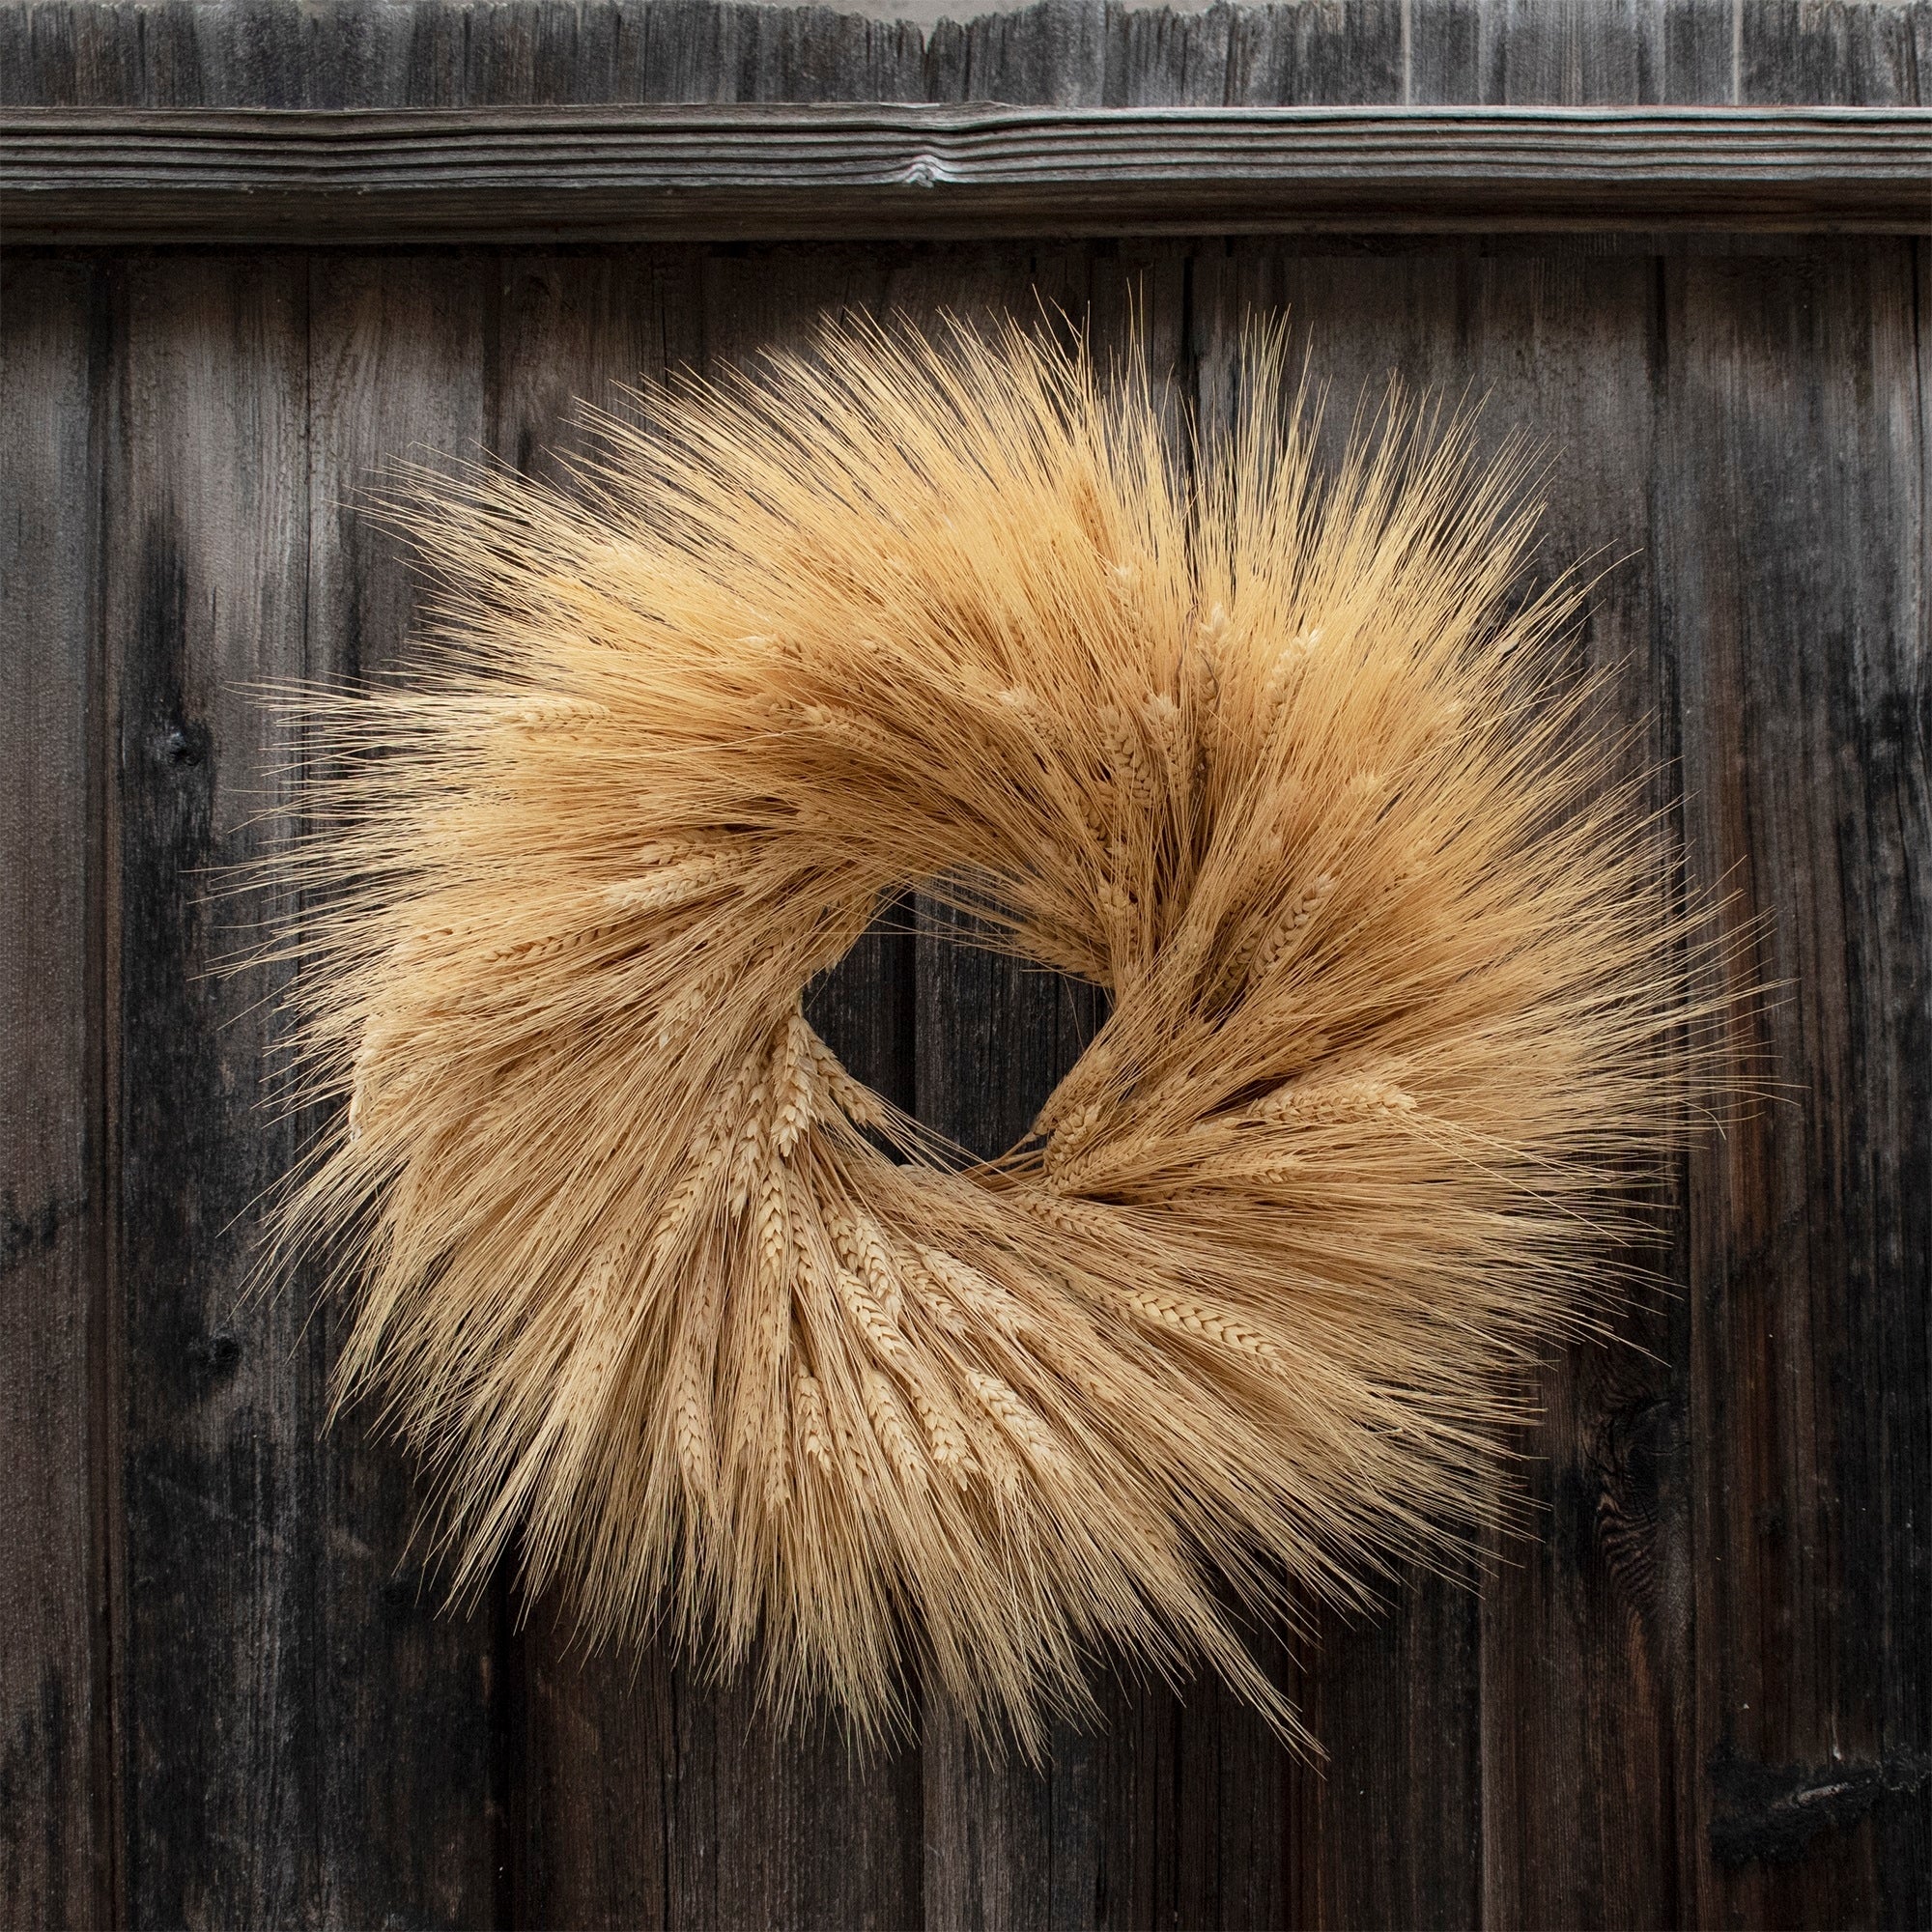 Dried Wheat Wreath 18"